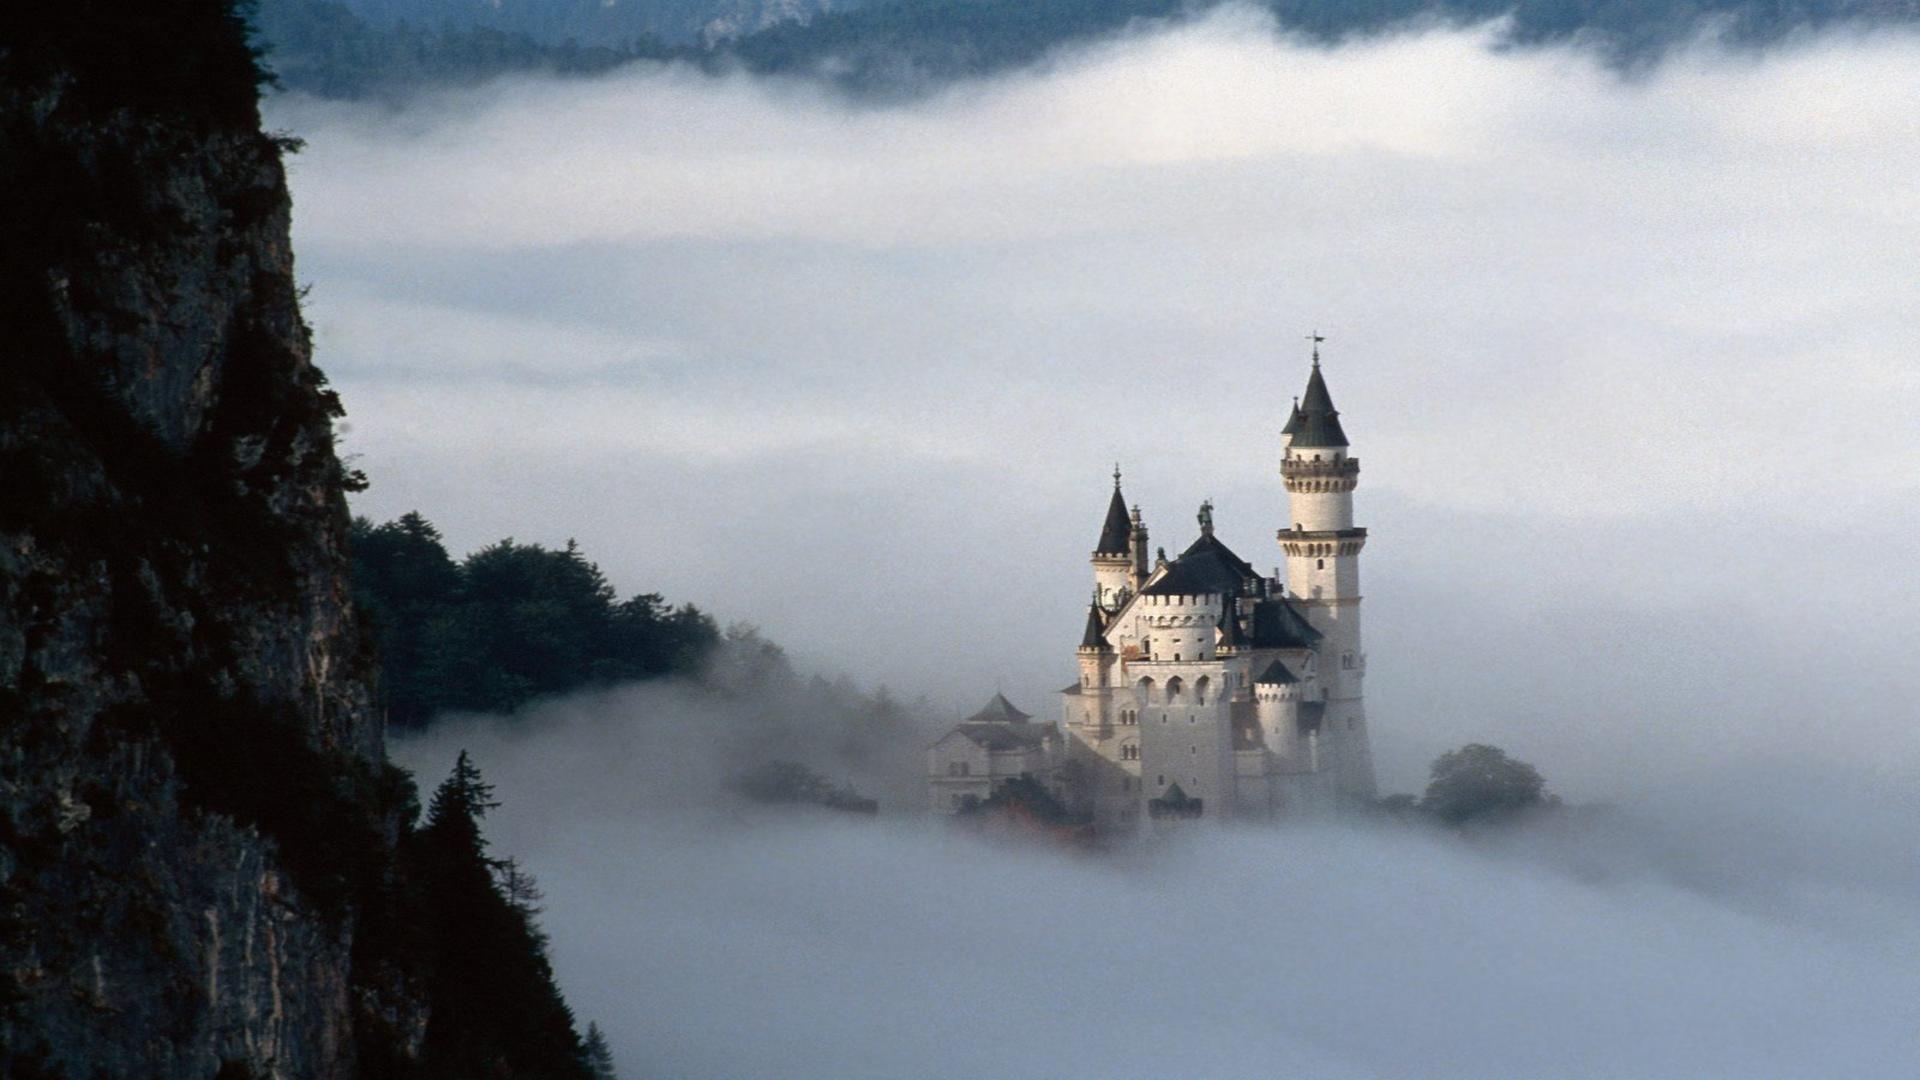 Neuschwanstein castle Bavaria Germany clouds mist around castle